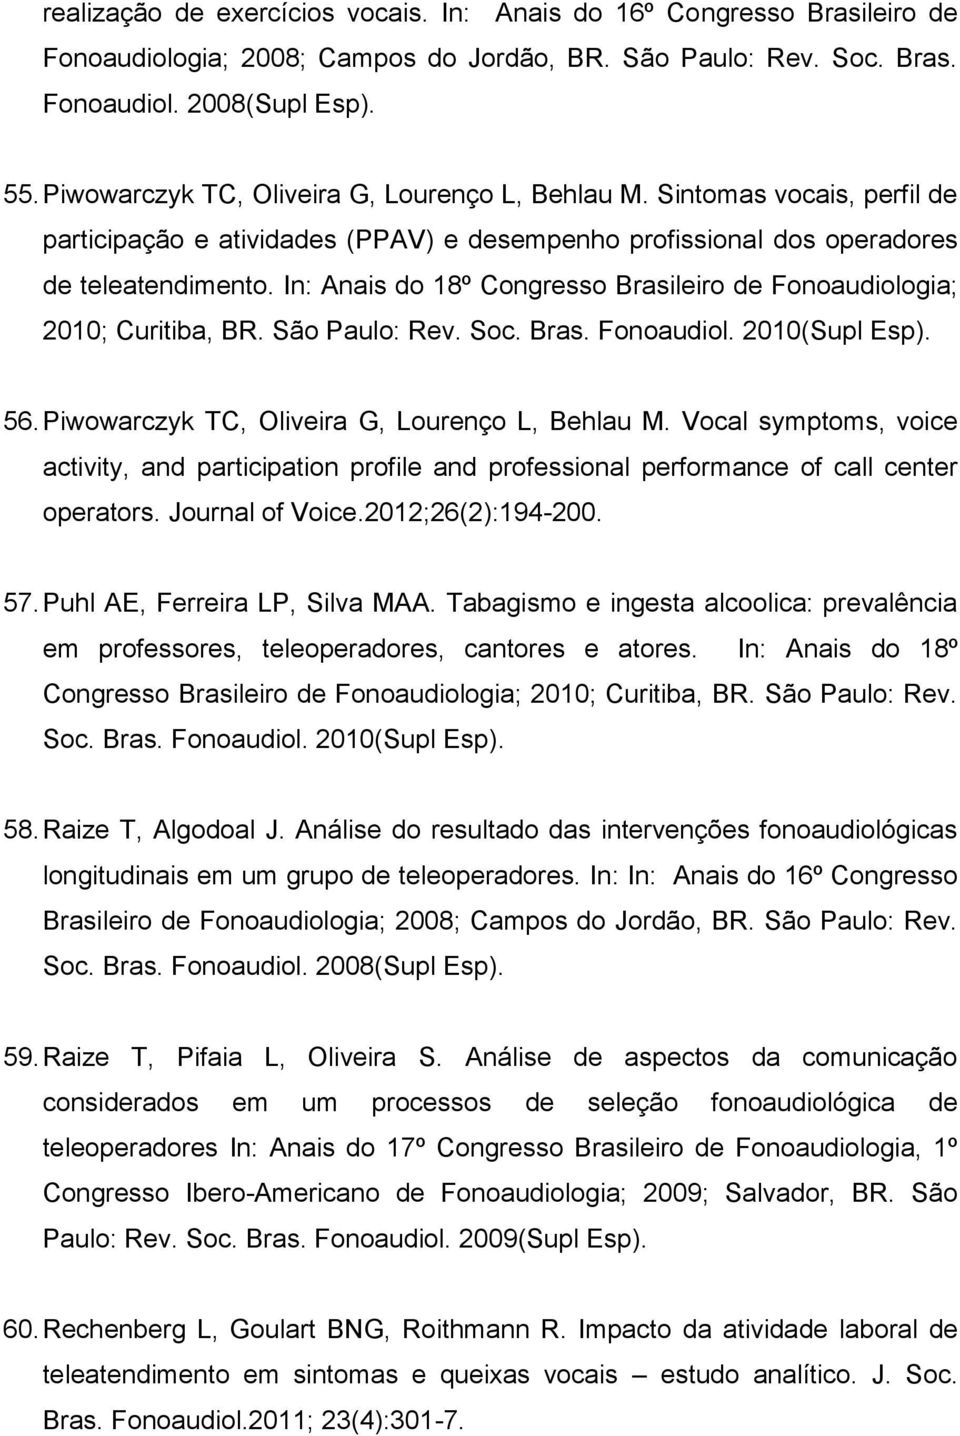 In: Anais do 18º Congresso Brasileiro de Fonoaudiologia; 2010; Curitiba, BR. São Paulo: Rev. Soc. Bras. Fonoaudiol. 2010(Supl Esp). 56. Piwowarczyk TC, Oliveira G, Lourenço L, Behlau M.